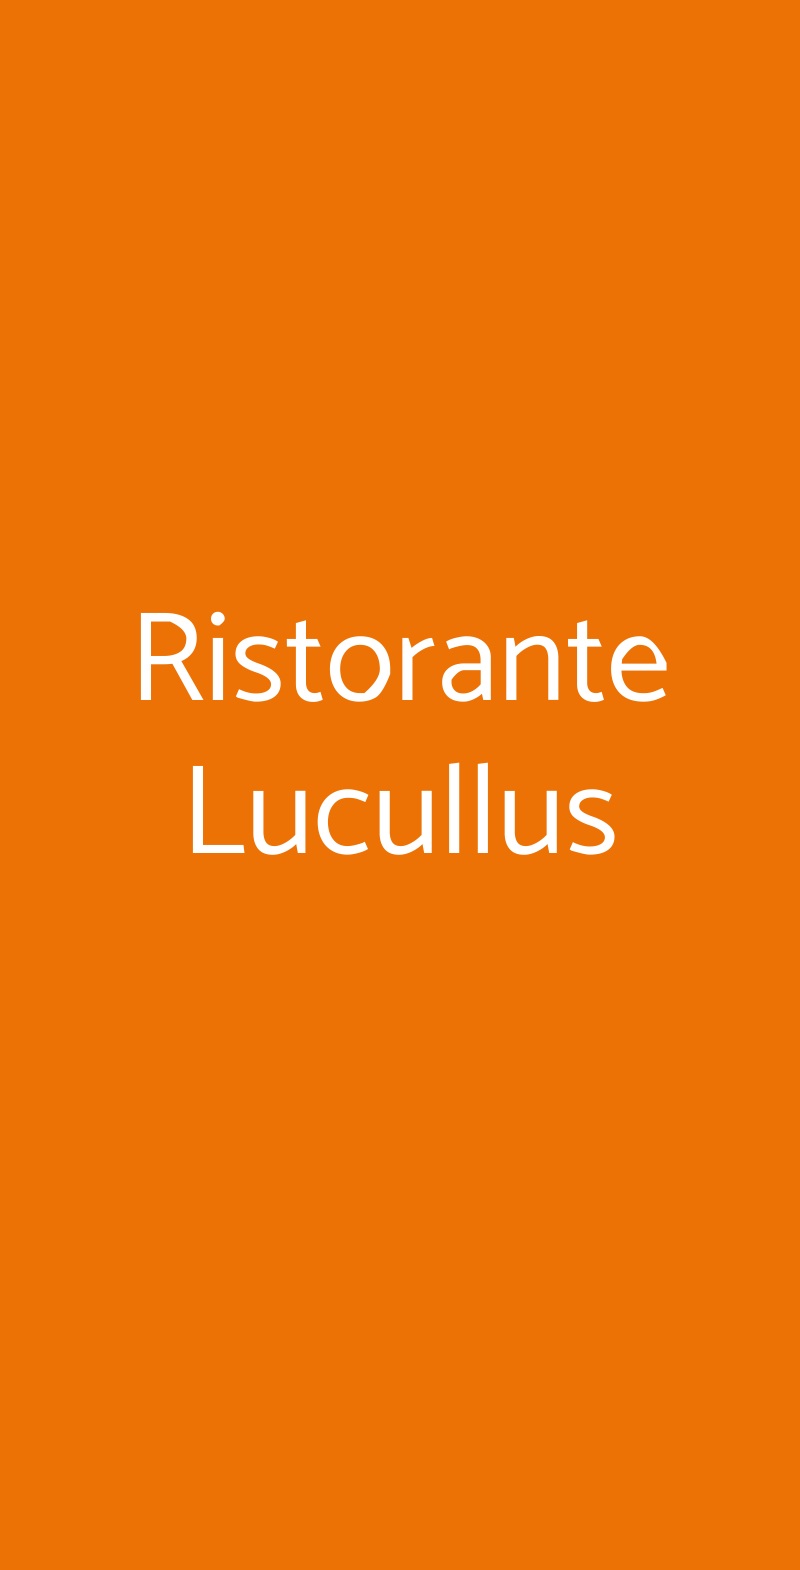 Ristorante Lucullus Pompei menù 1 pagina